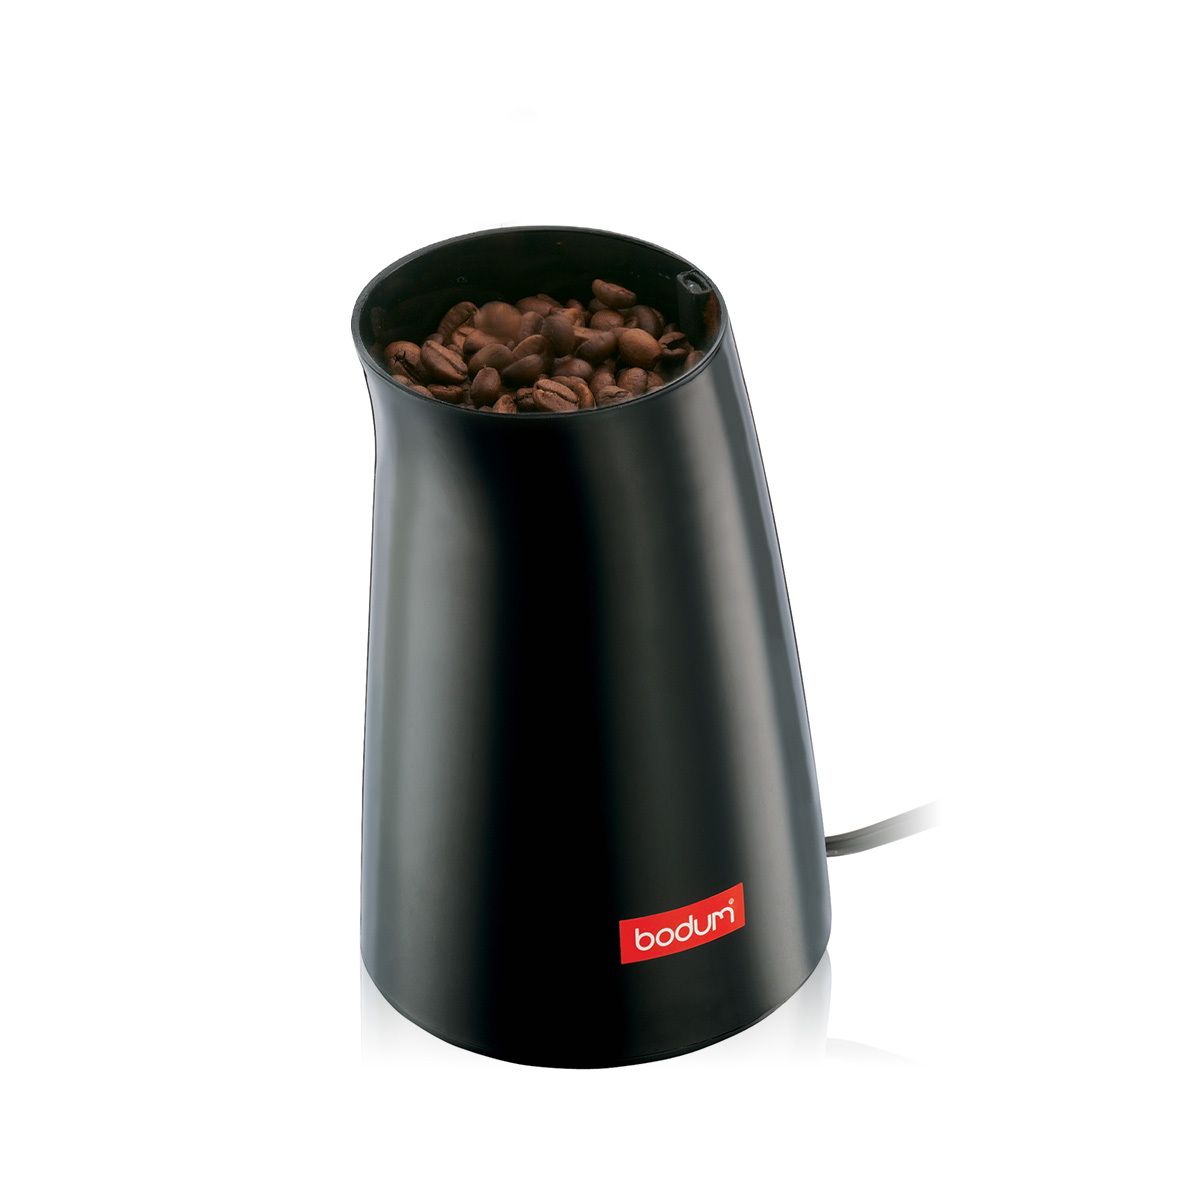 Bodum C Mill El. Molinillo de café con percusión, negro